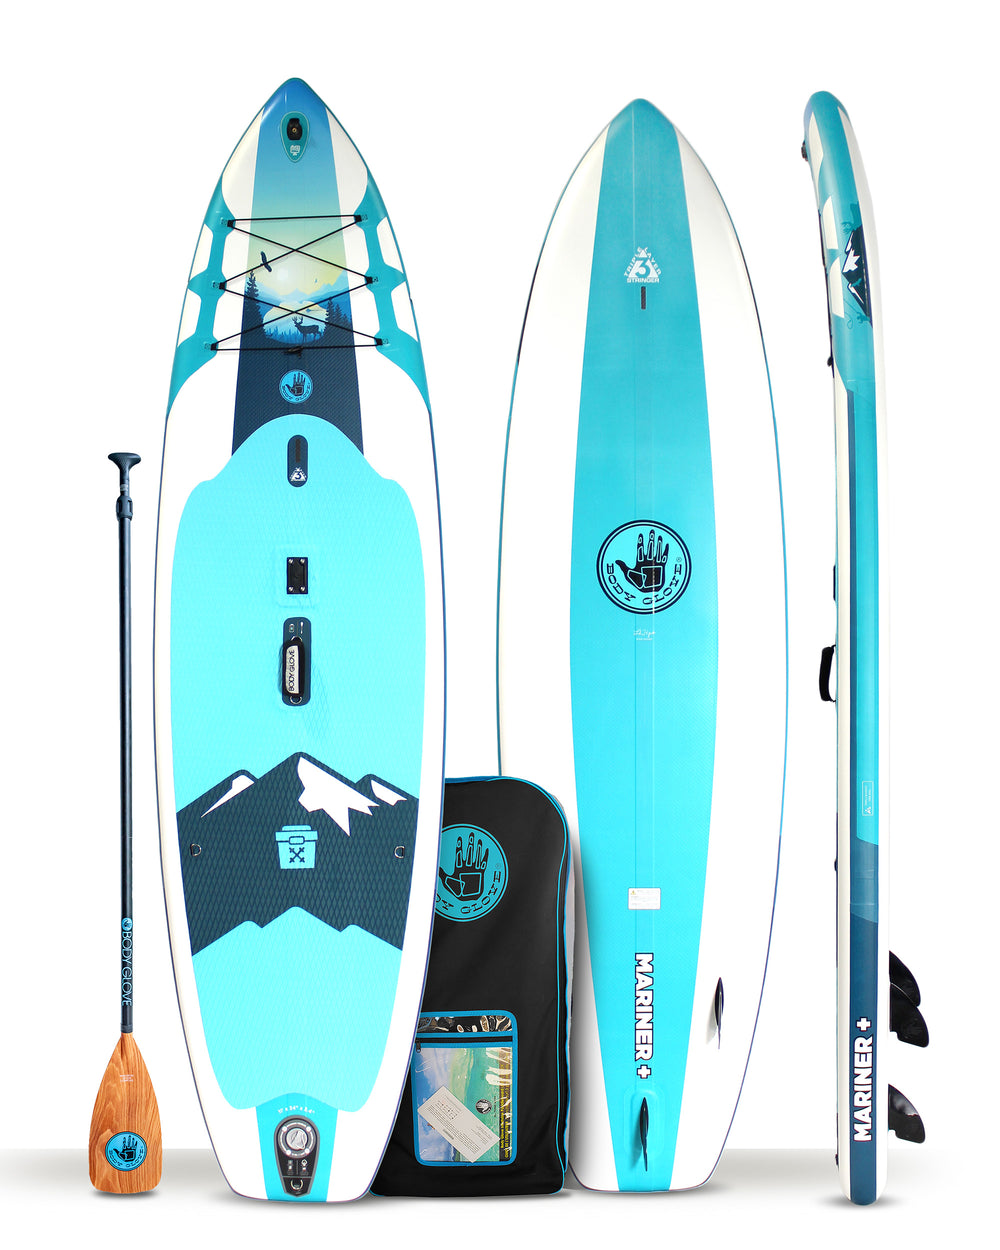 isupmarp20u-aqwh___mariner-11-inflatable-paddle-board-package-aqua-white___package_1000x.jpeg